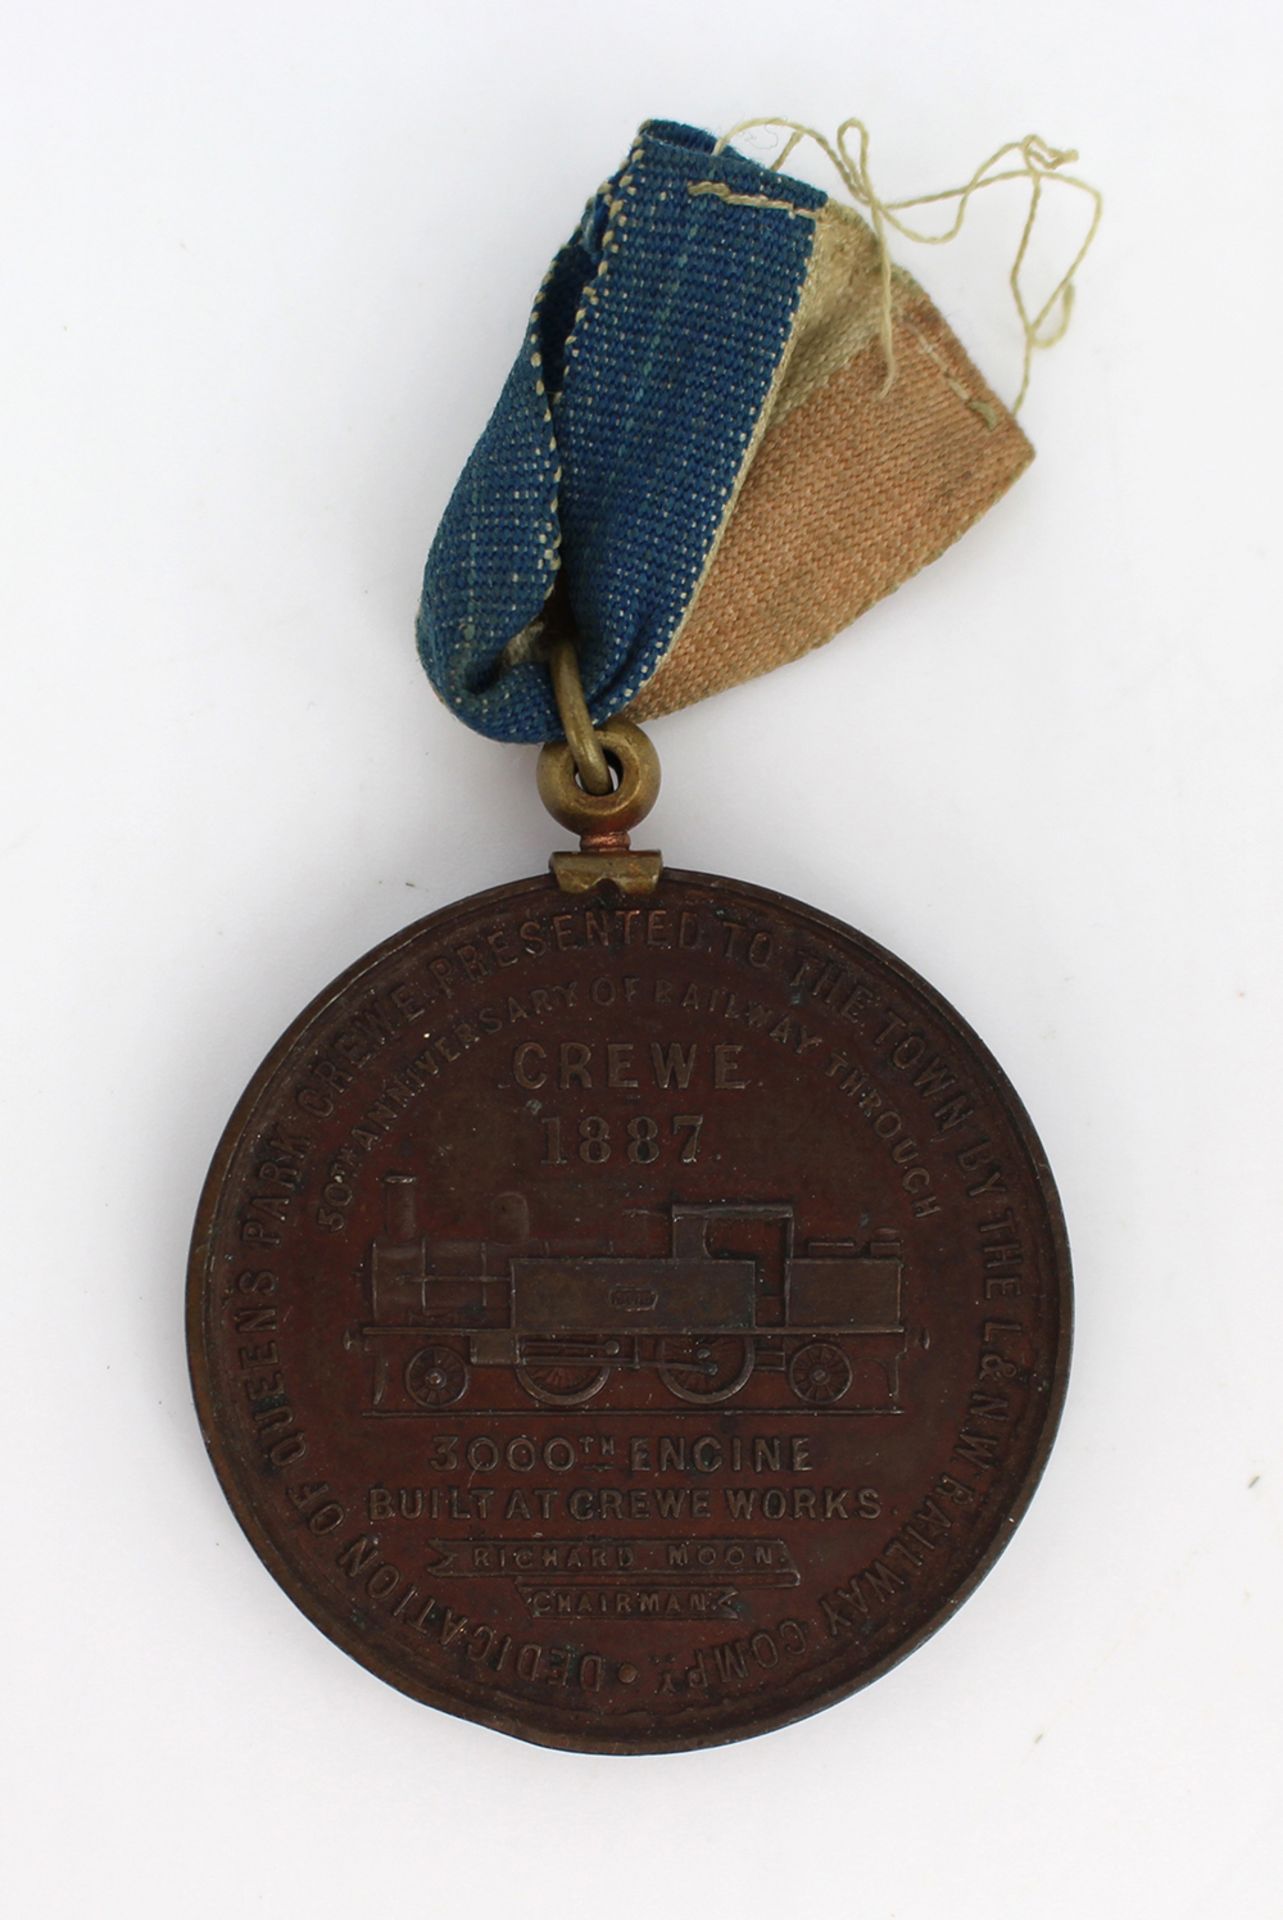 Queen Victoria 1887 Golden Jubilee Bronze Medal - Image 3 of 3